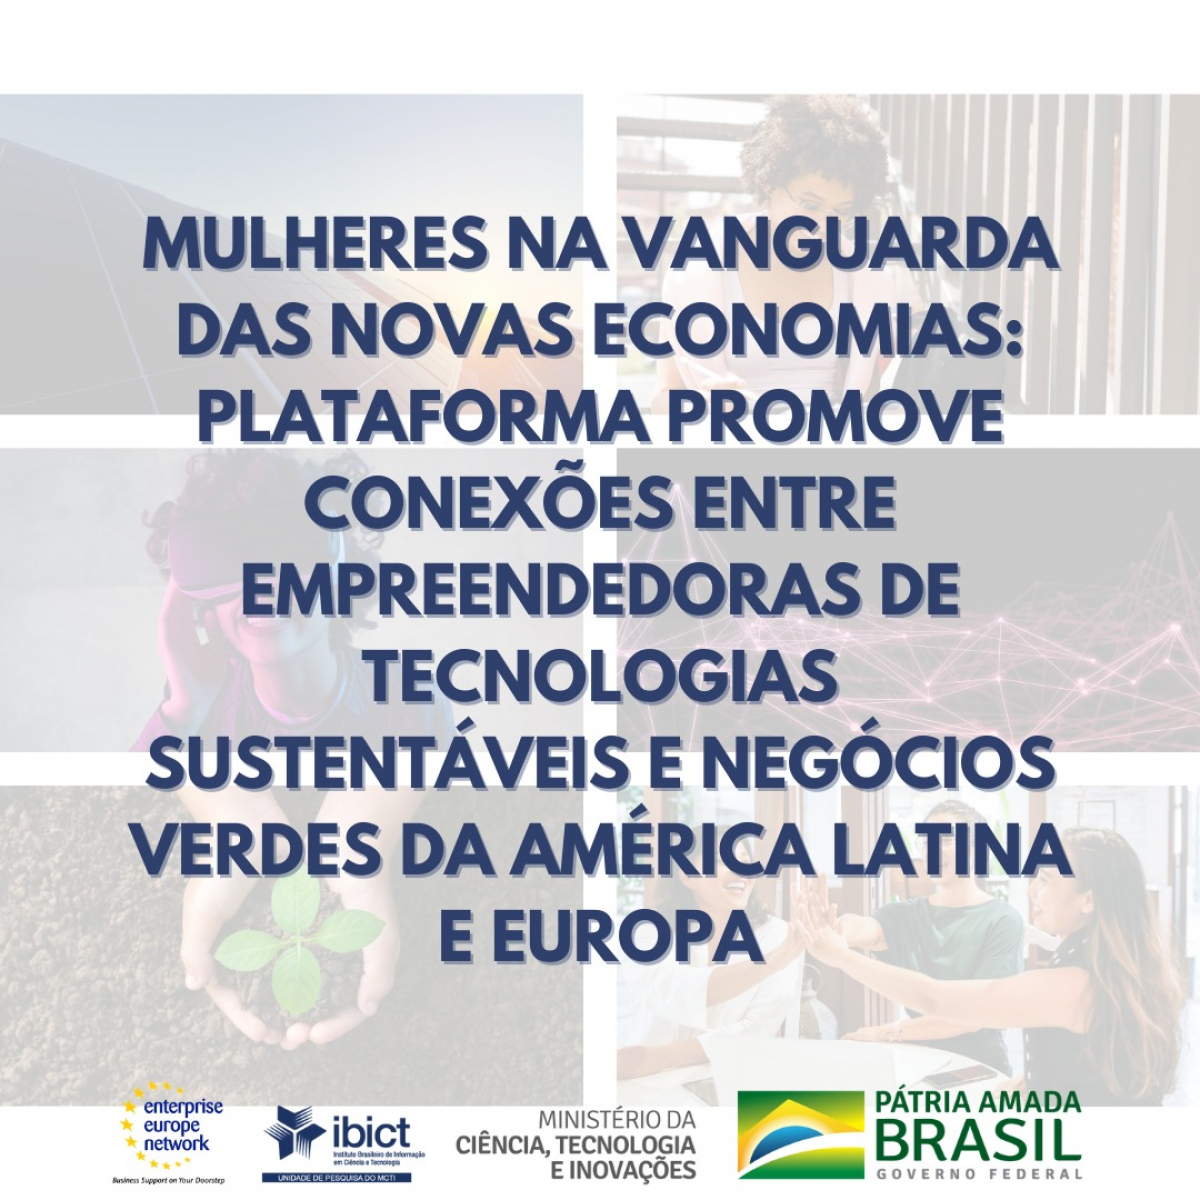 Mulheres na vanguarda das Novas Economias: plataforma promove conexões entre empreendedoras de tecnologias sustentáveis e negócios verdes da América Latina e Europa